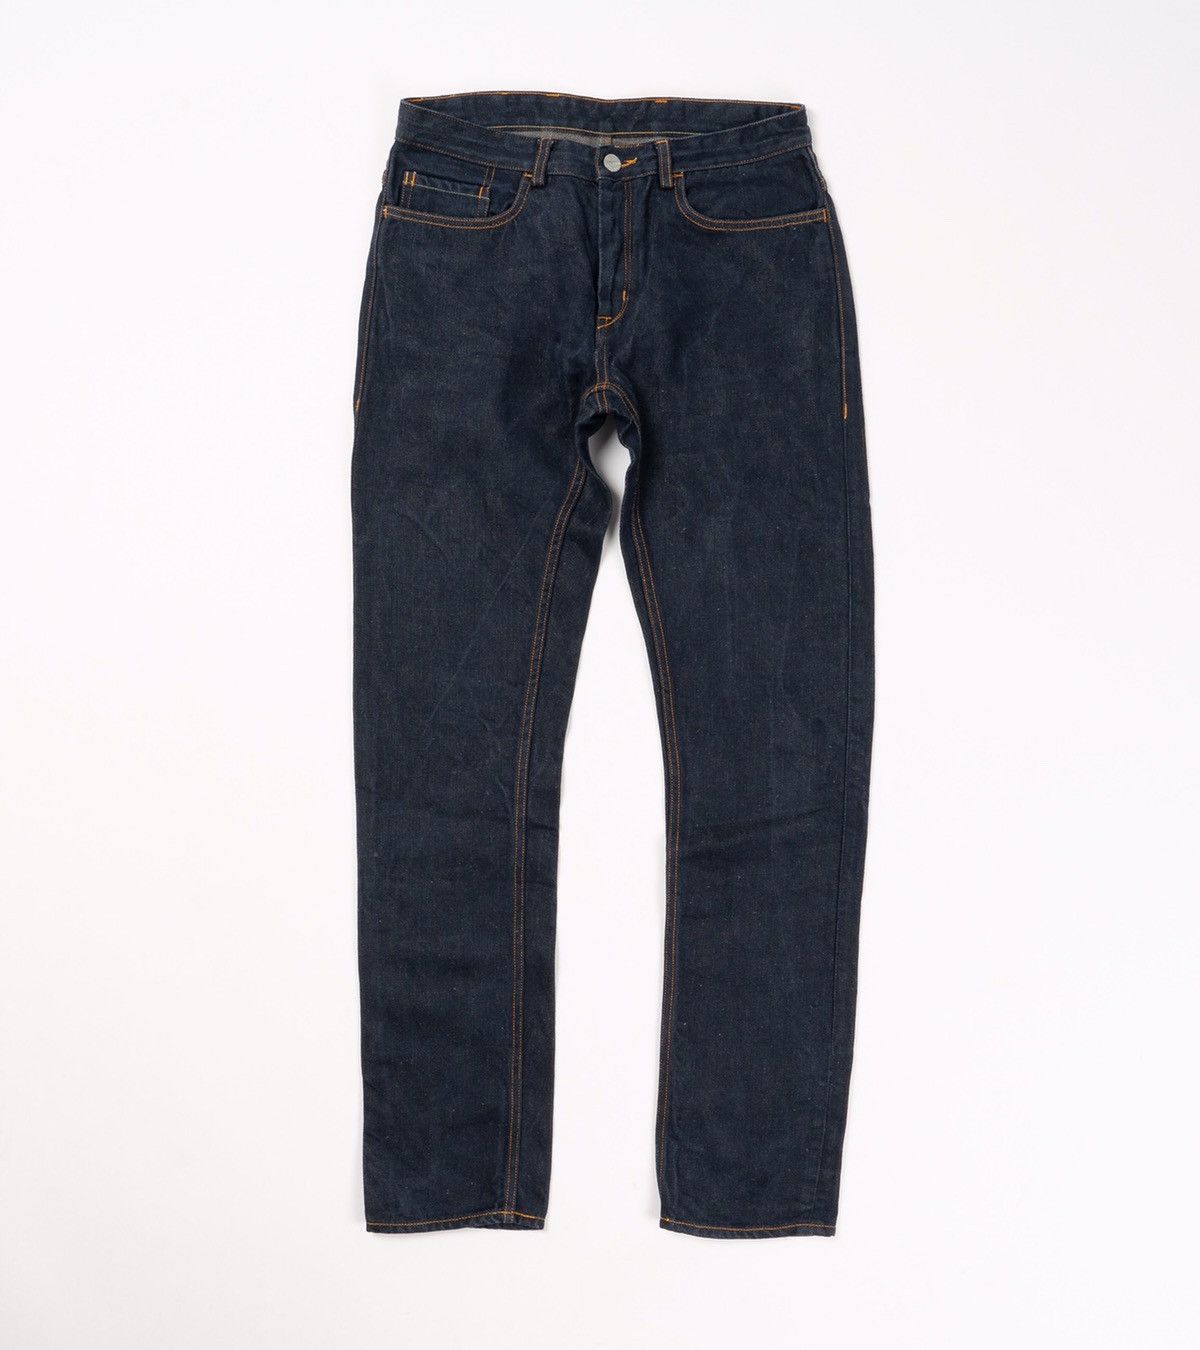 Freitag Freitag e500 jeans | Grailed